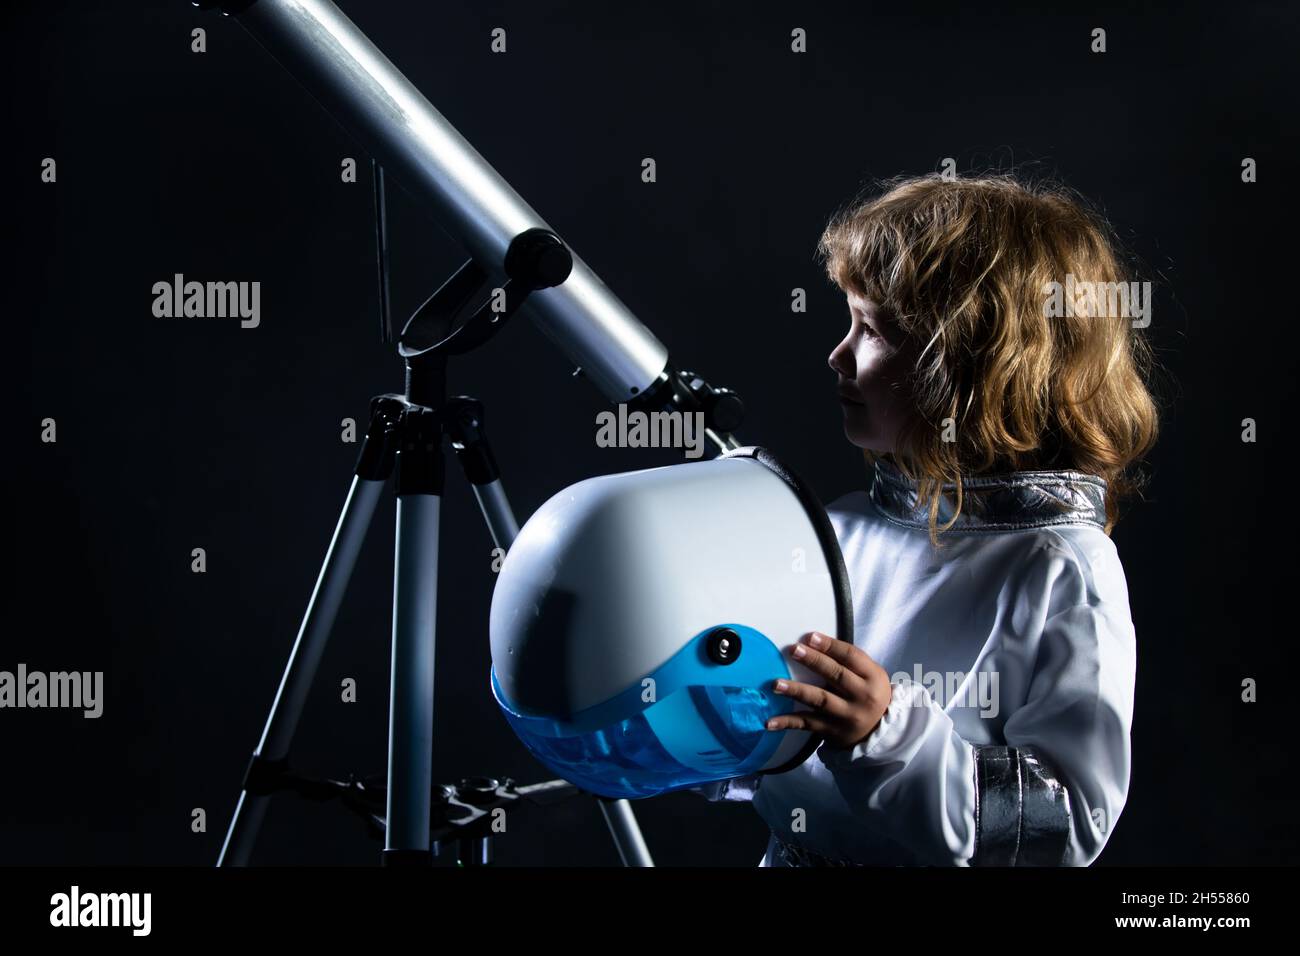 Garçon jouant pour être un astronaute avec un casque d'espace et une combinaison en métal.Portrait d'un gamin drôle avec casque d'astronaute sur fond noir. Banque D'Images